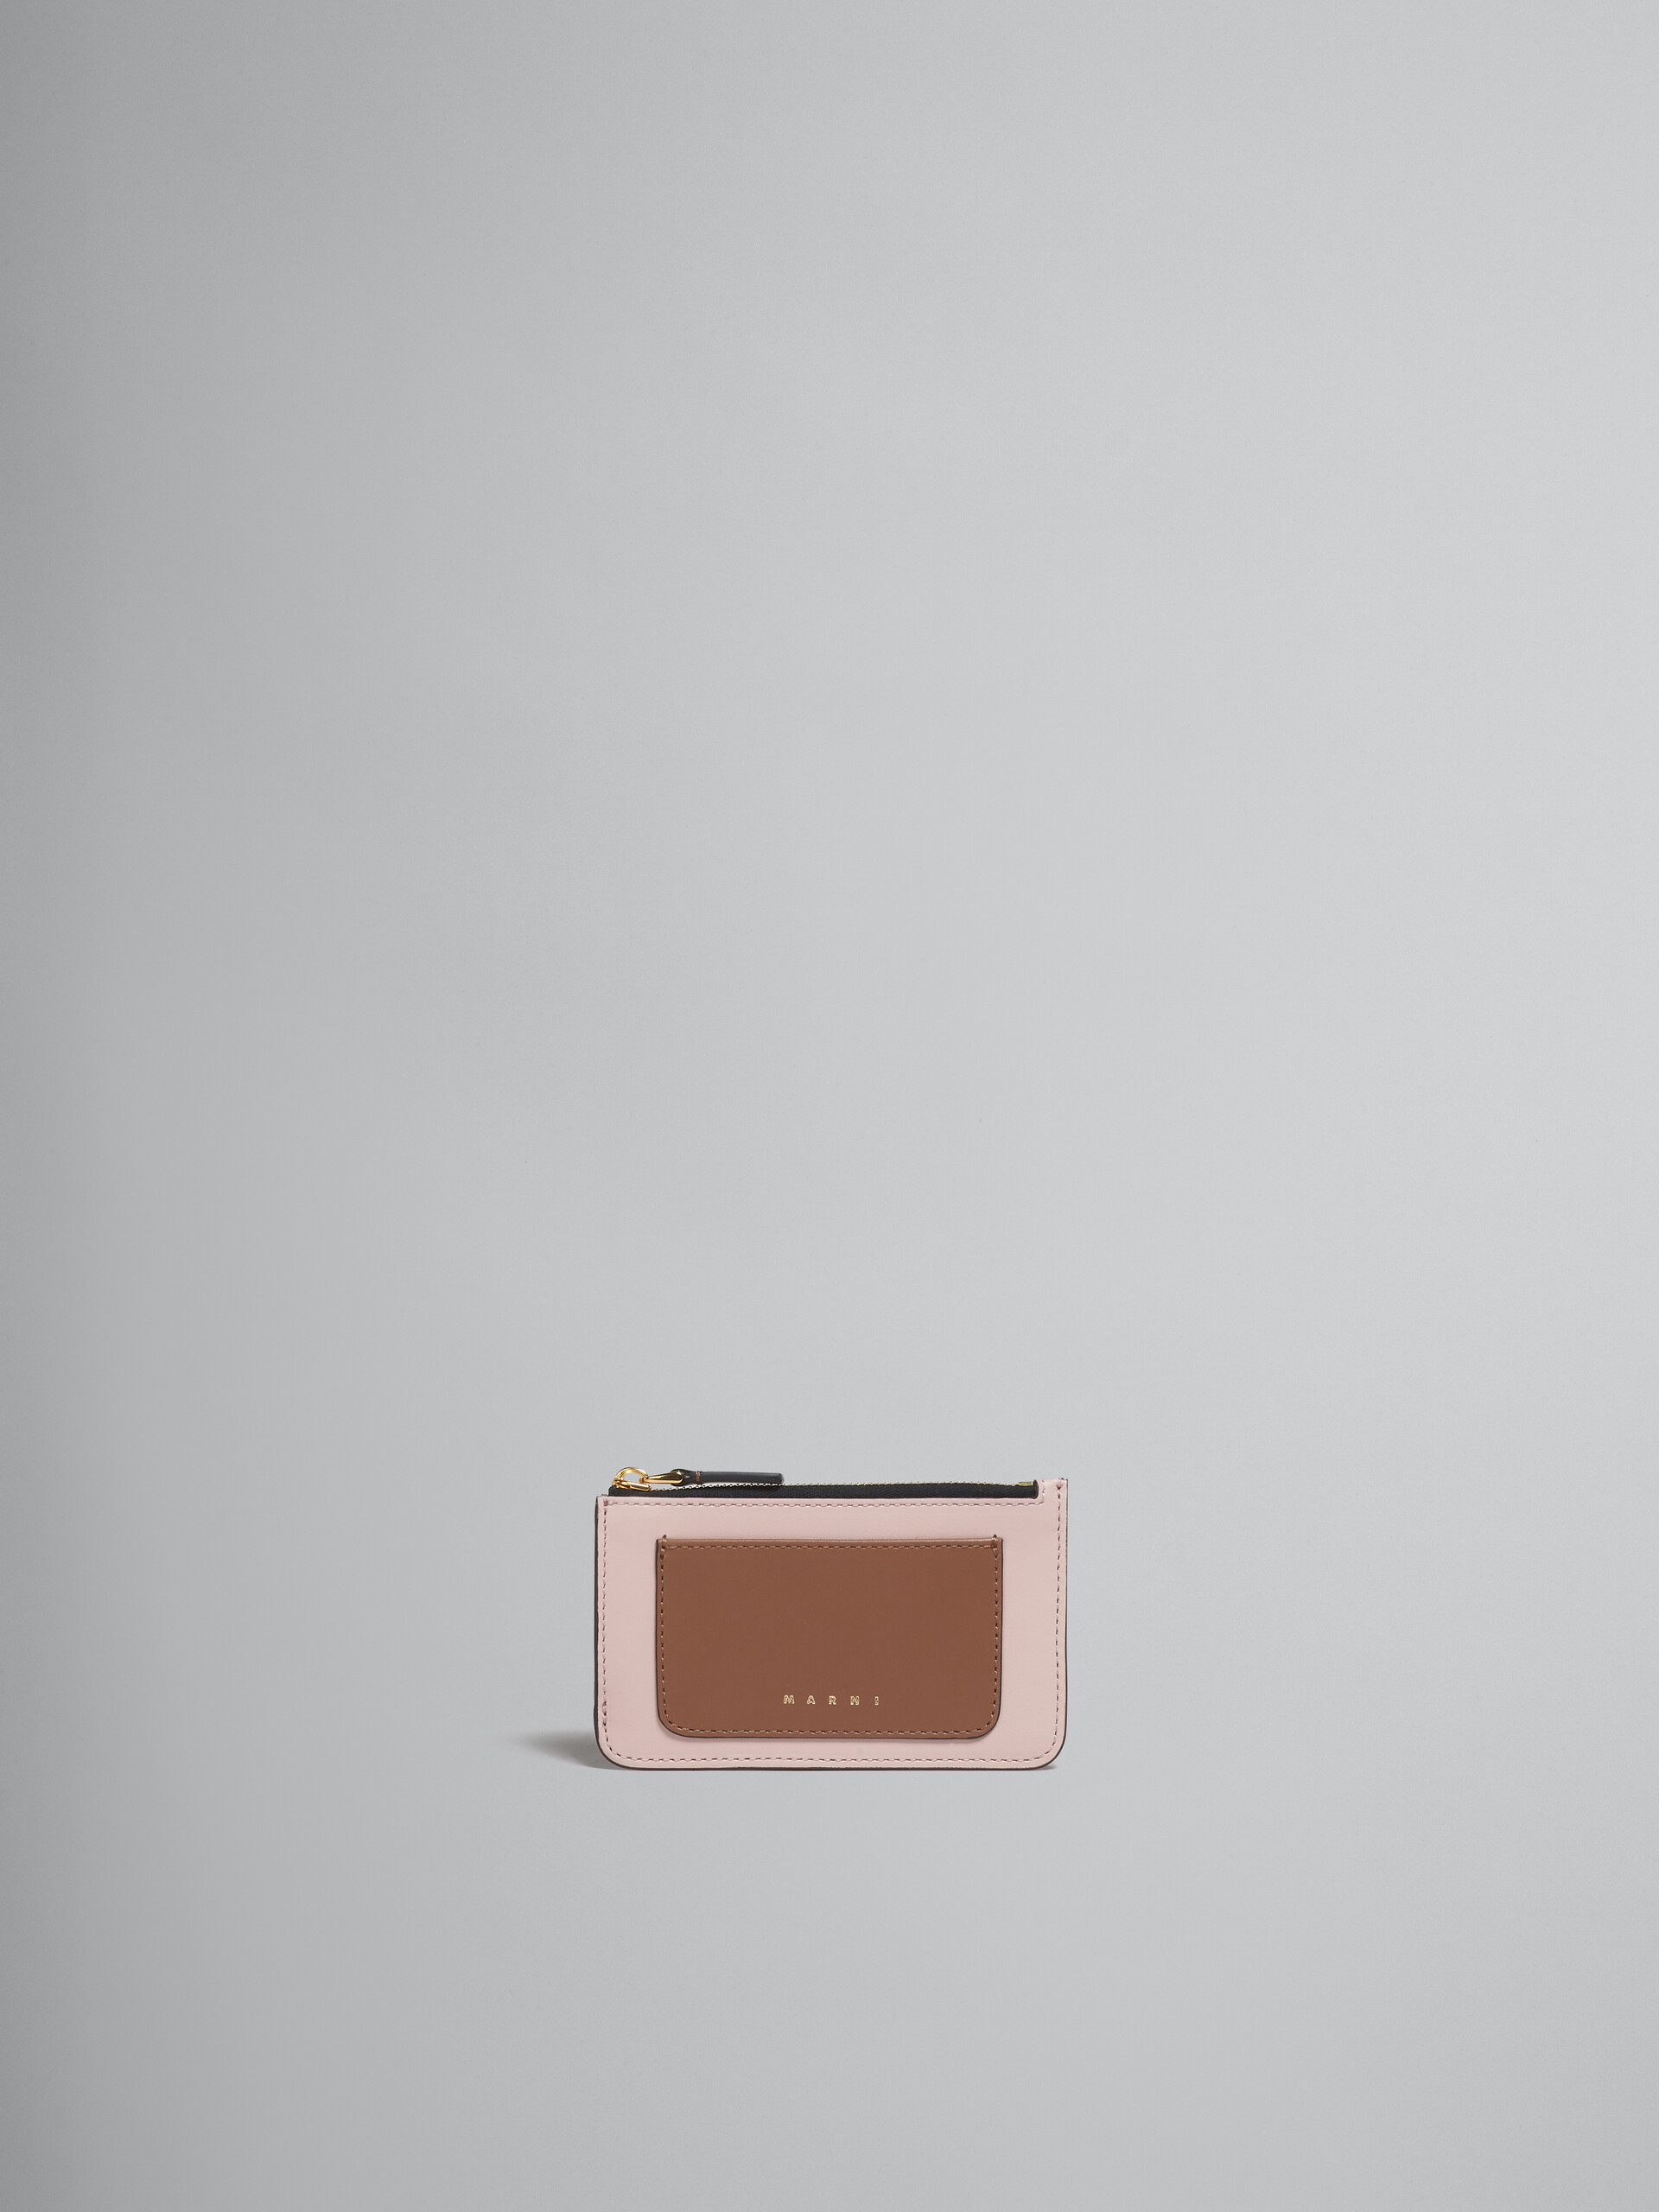 ブラウン、ピンク、バーガンディ サフィアーノレザー製 カードケース - 財布 - Image 1